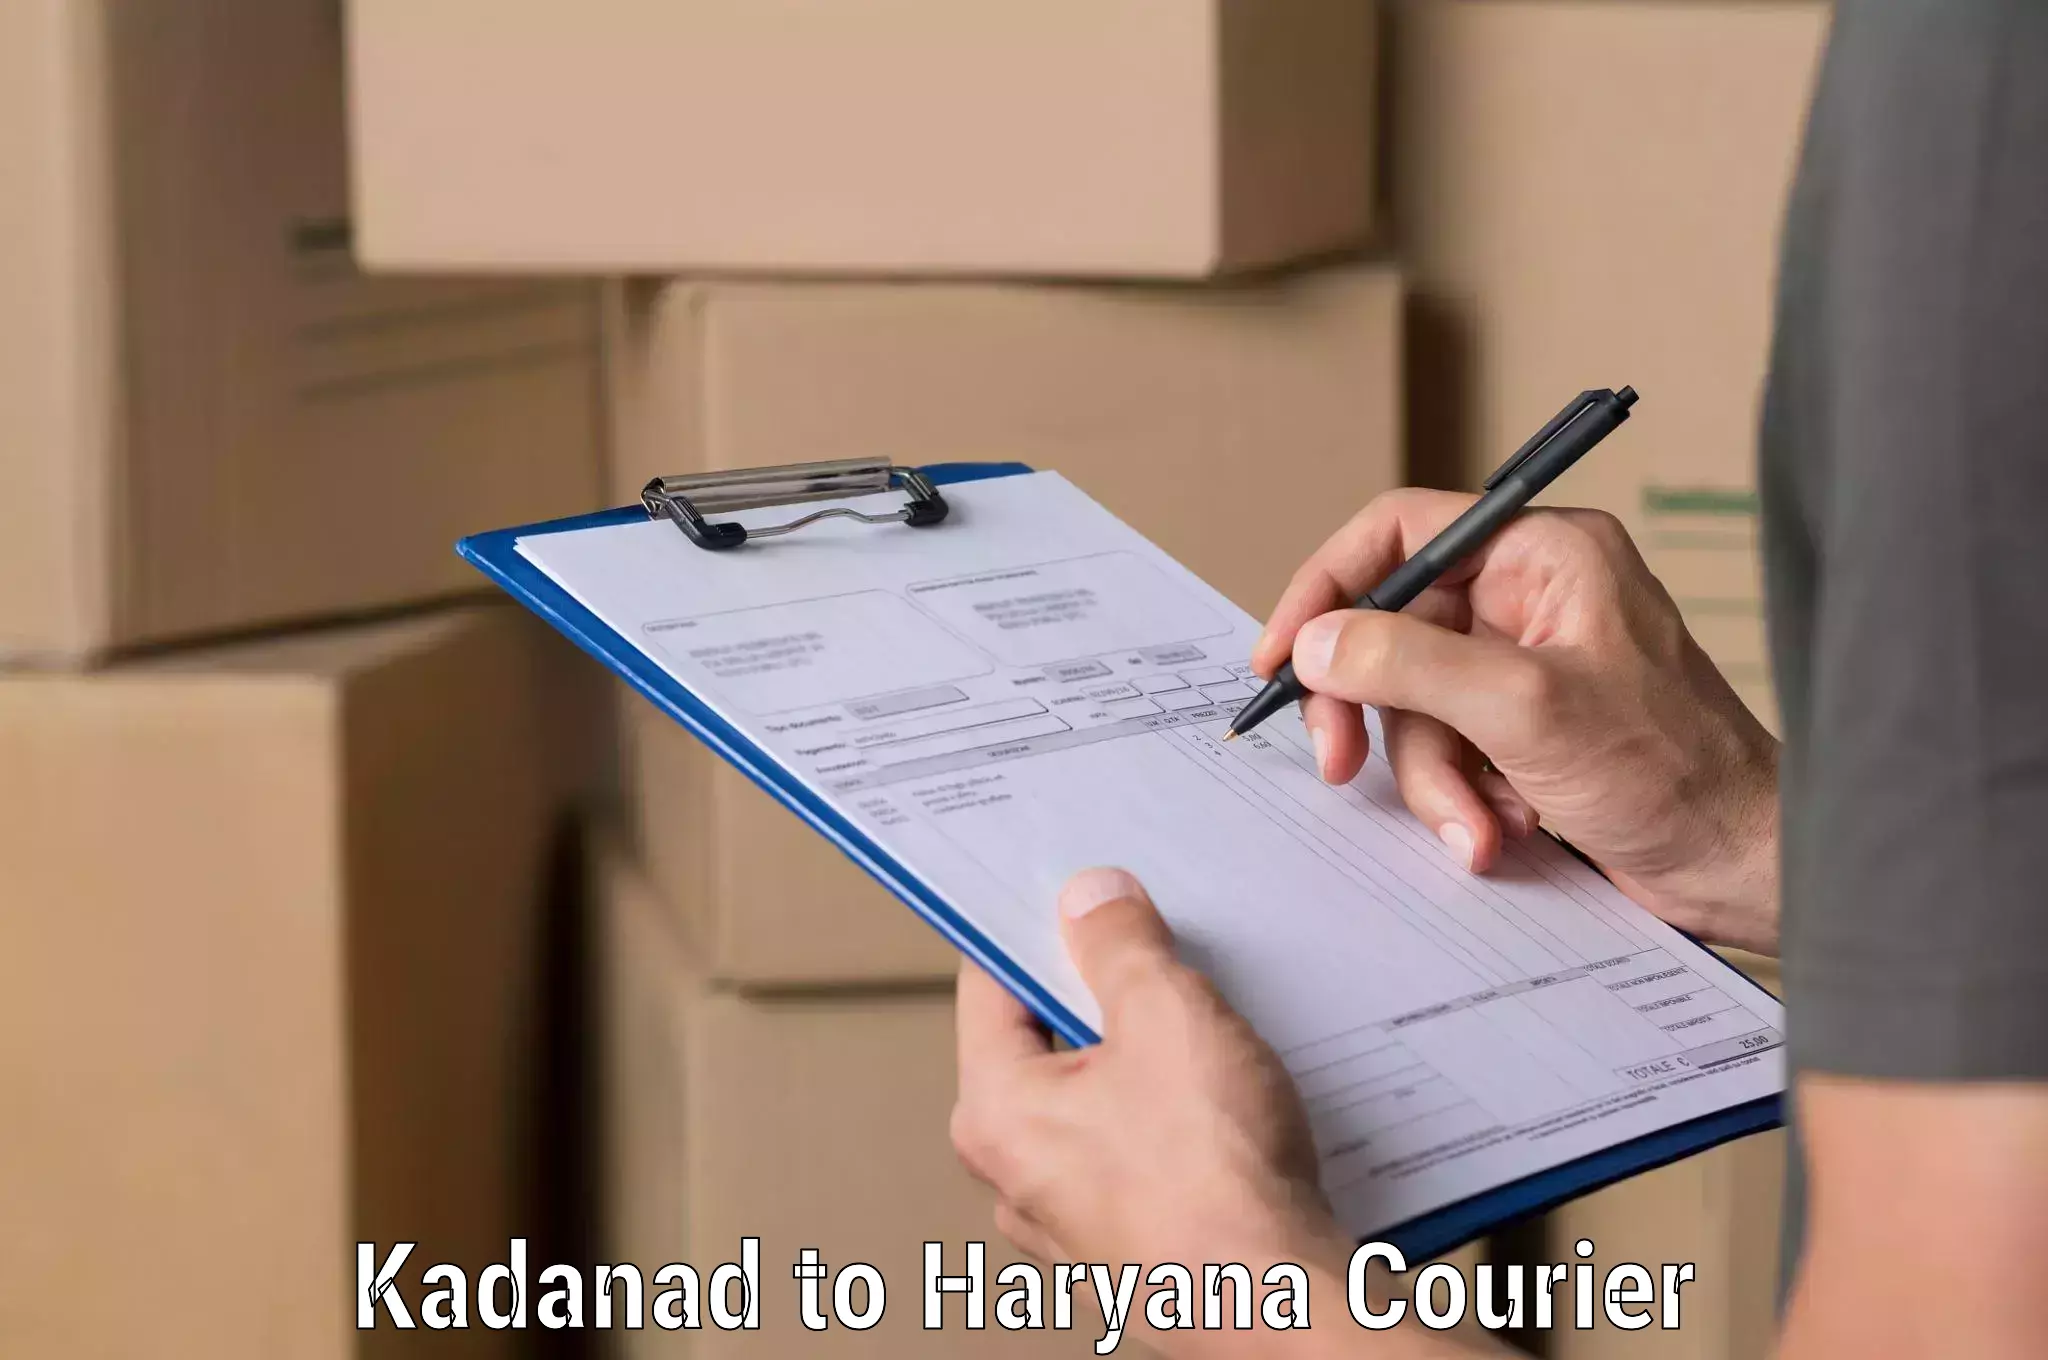 State-of-the-art courier technology Kadanad to Chandi Rohtak